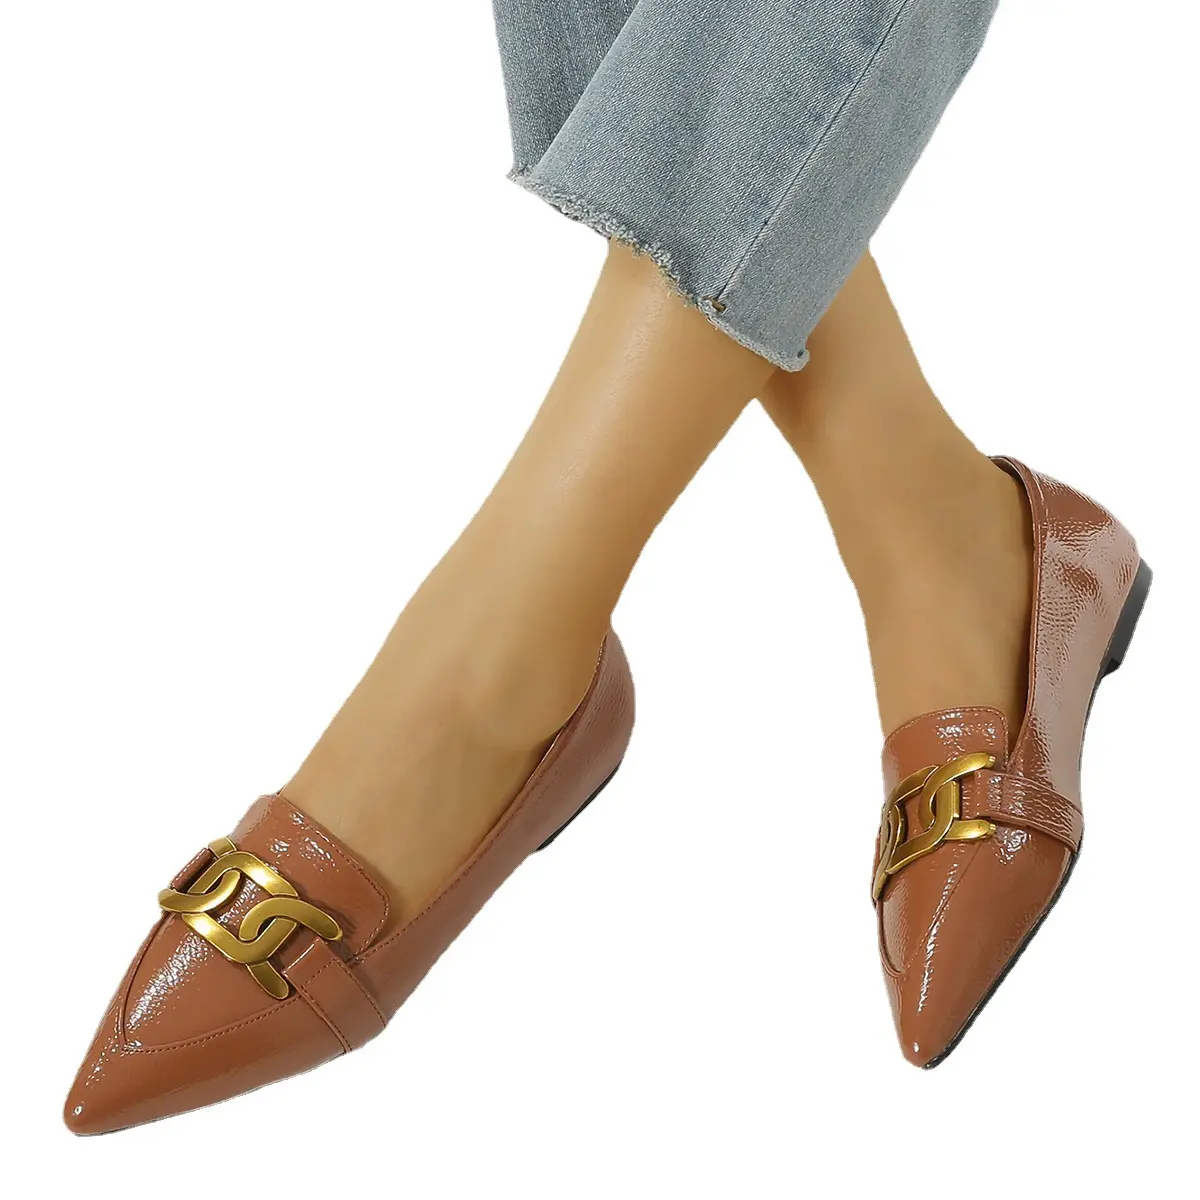 Scarpe Casual da donna in metallo francese con rifiniture a catena bocca bassa punta a punta mocassini piatti fibbia dorata scarpe mocassino